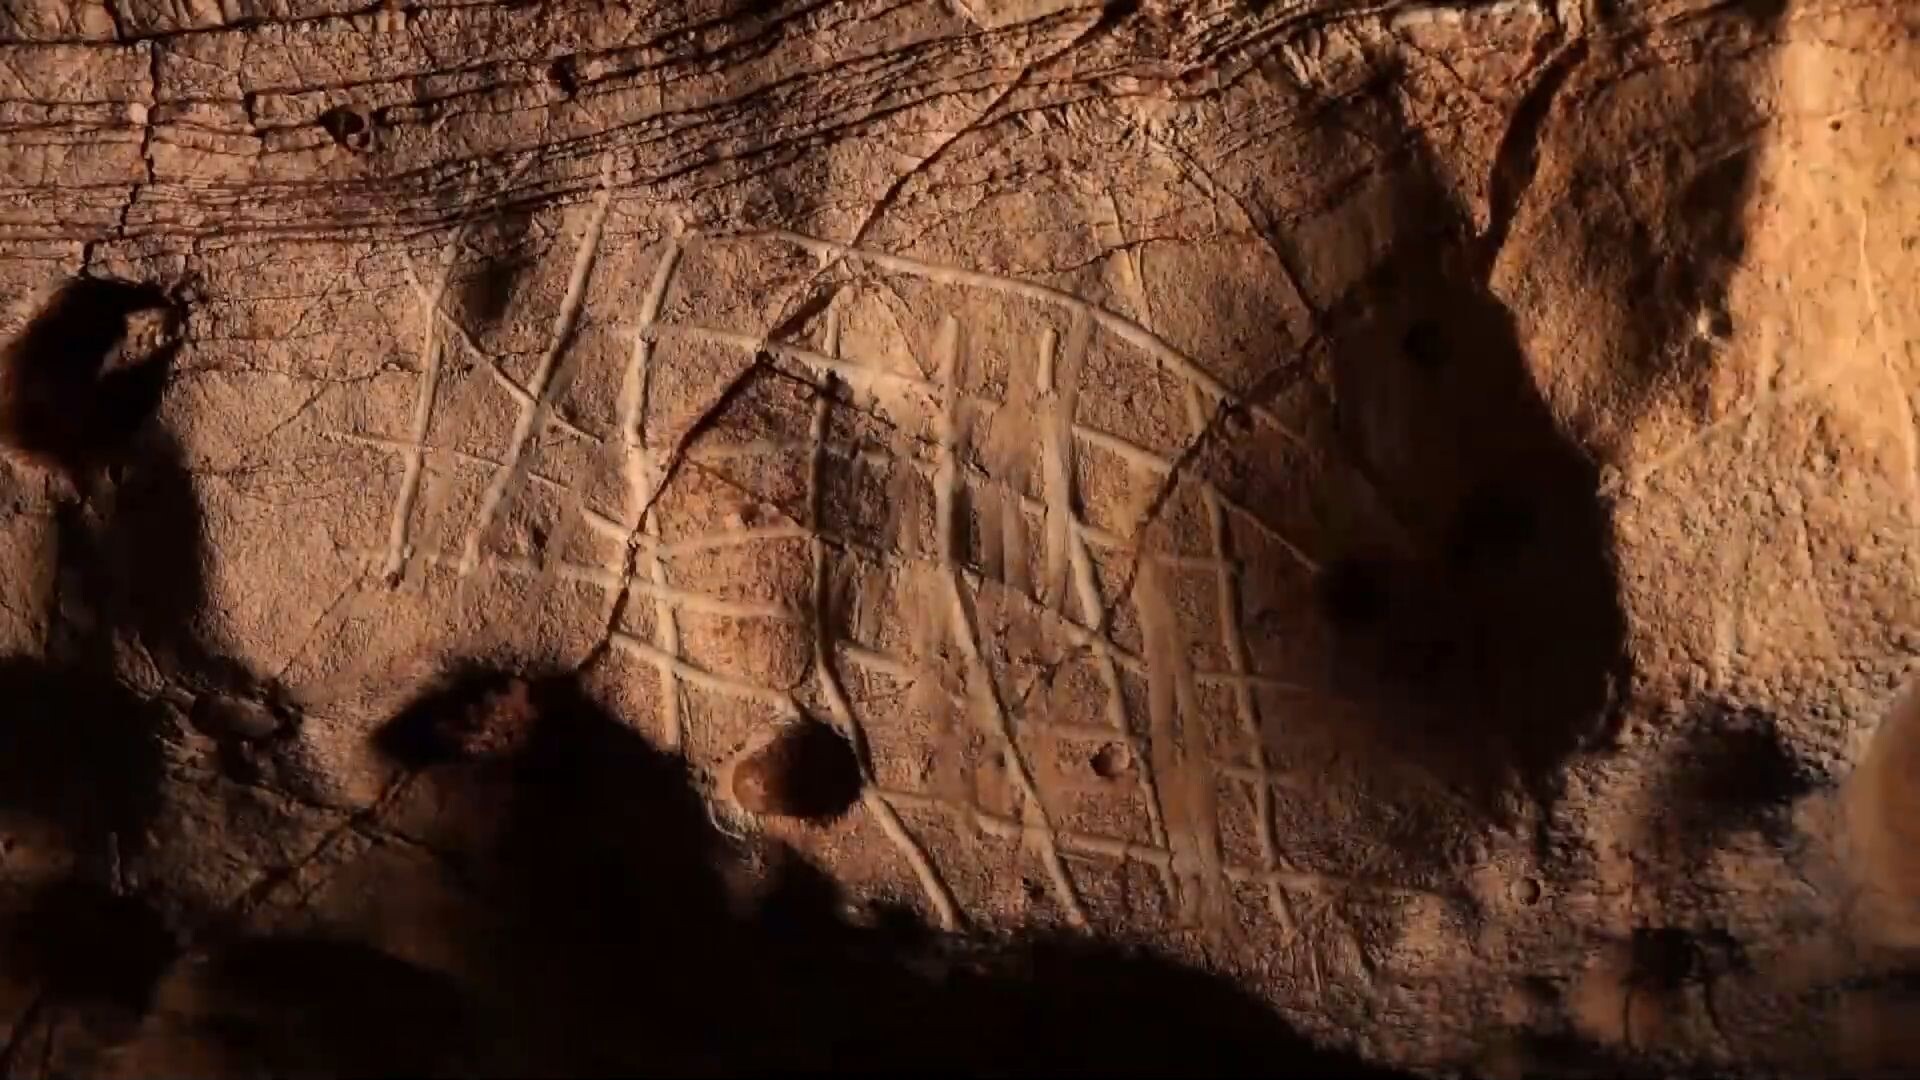 สเปนพบ 'ภาพสลักผนังถ้ำ' ยาว 8 เมตร เก่าแก่นับพันปี